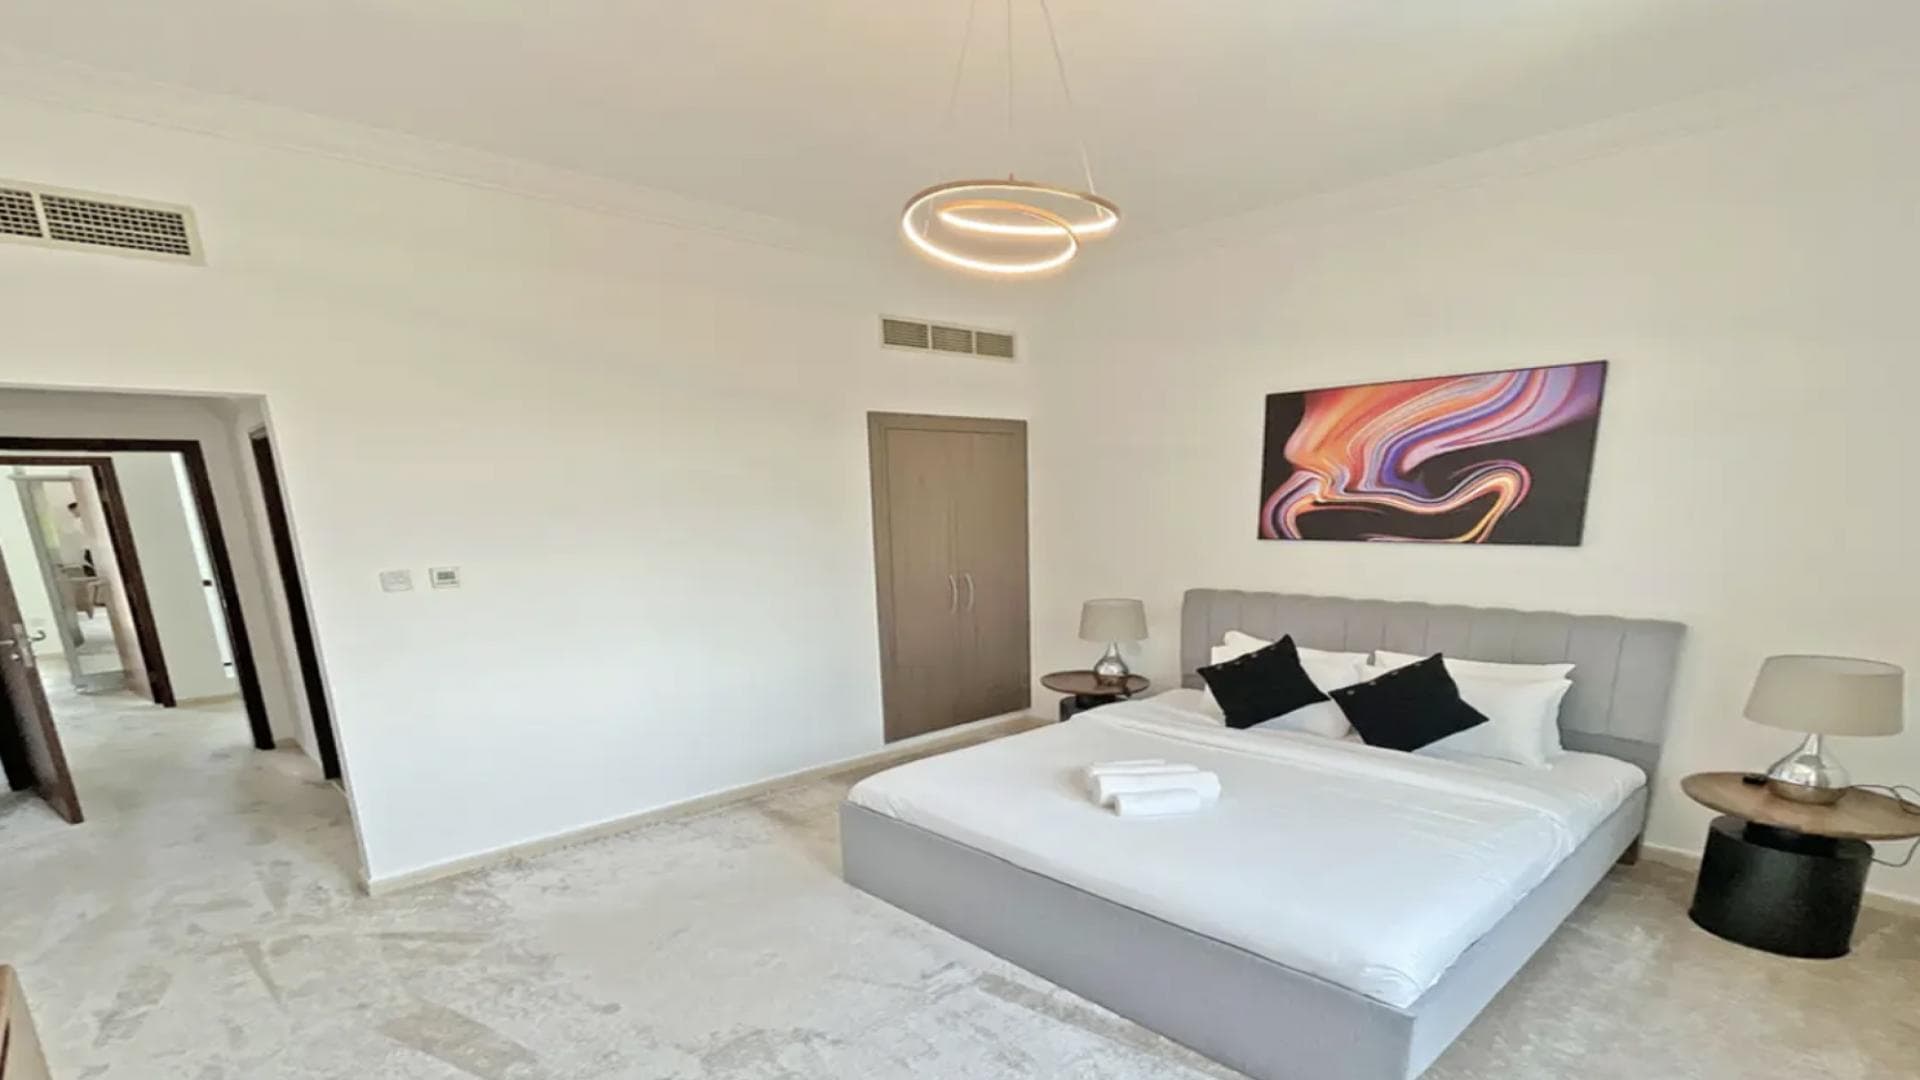 4 Bedroom Villa For Rent Al Thamam 13 Lp34806 3479647612dbb60.png